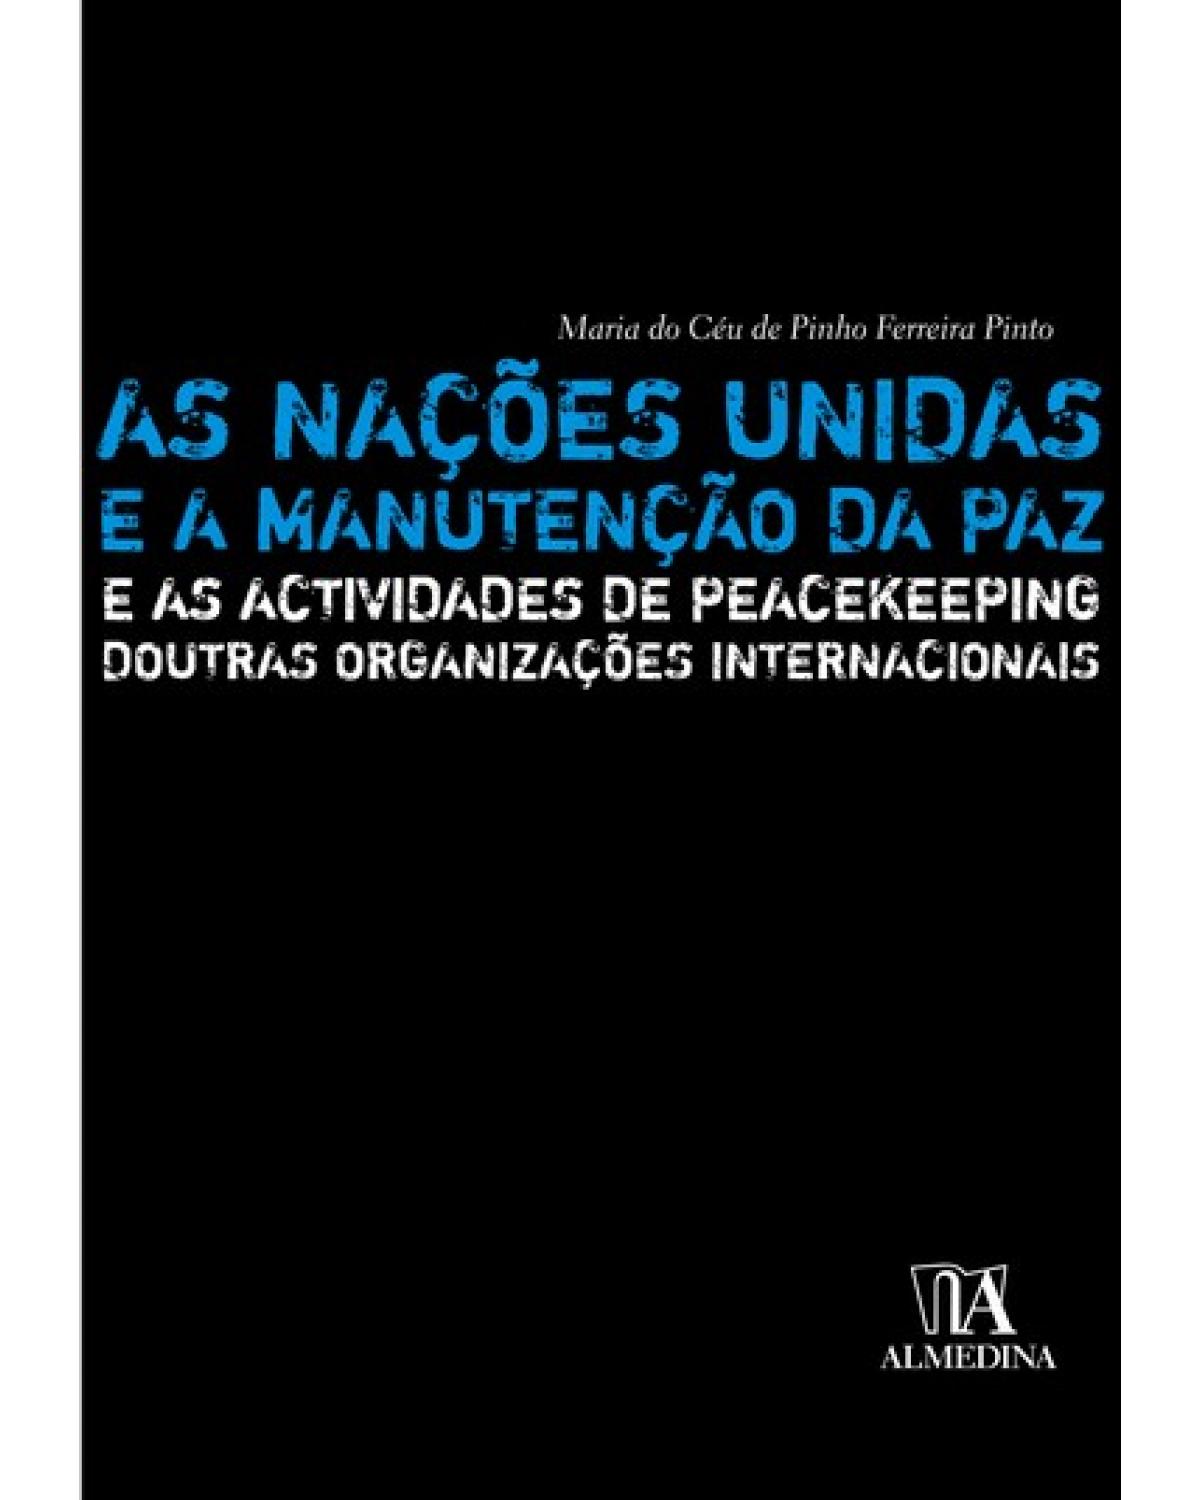 As Nações Unidas e a manutenção da paz - e as actividades de peacekeeping doutras organizações internacionais - 1ª Edição | 2007